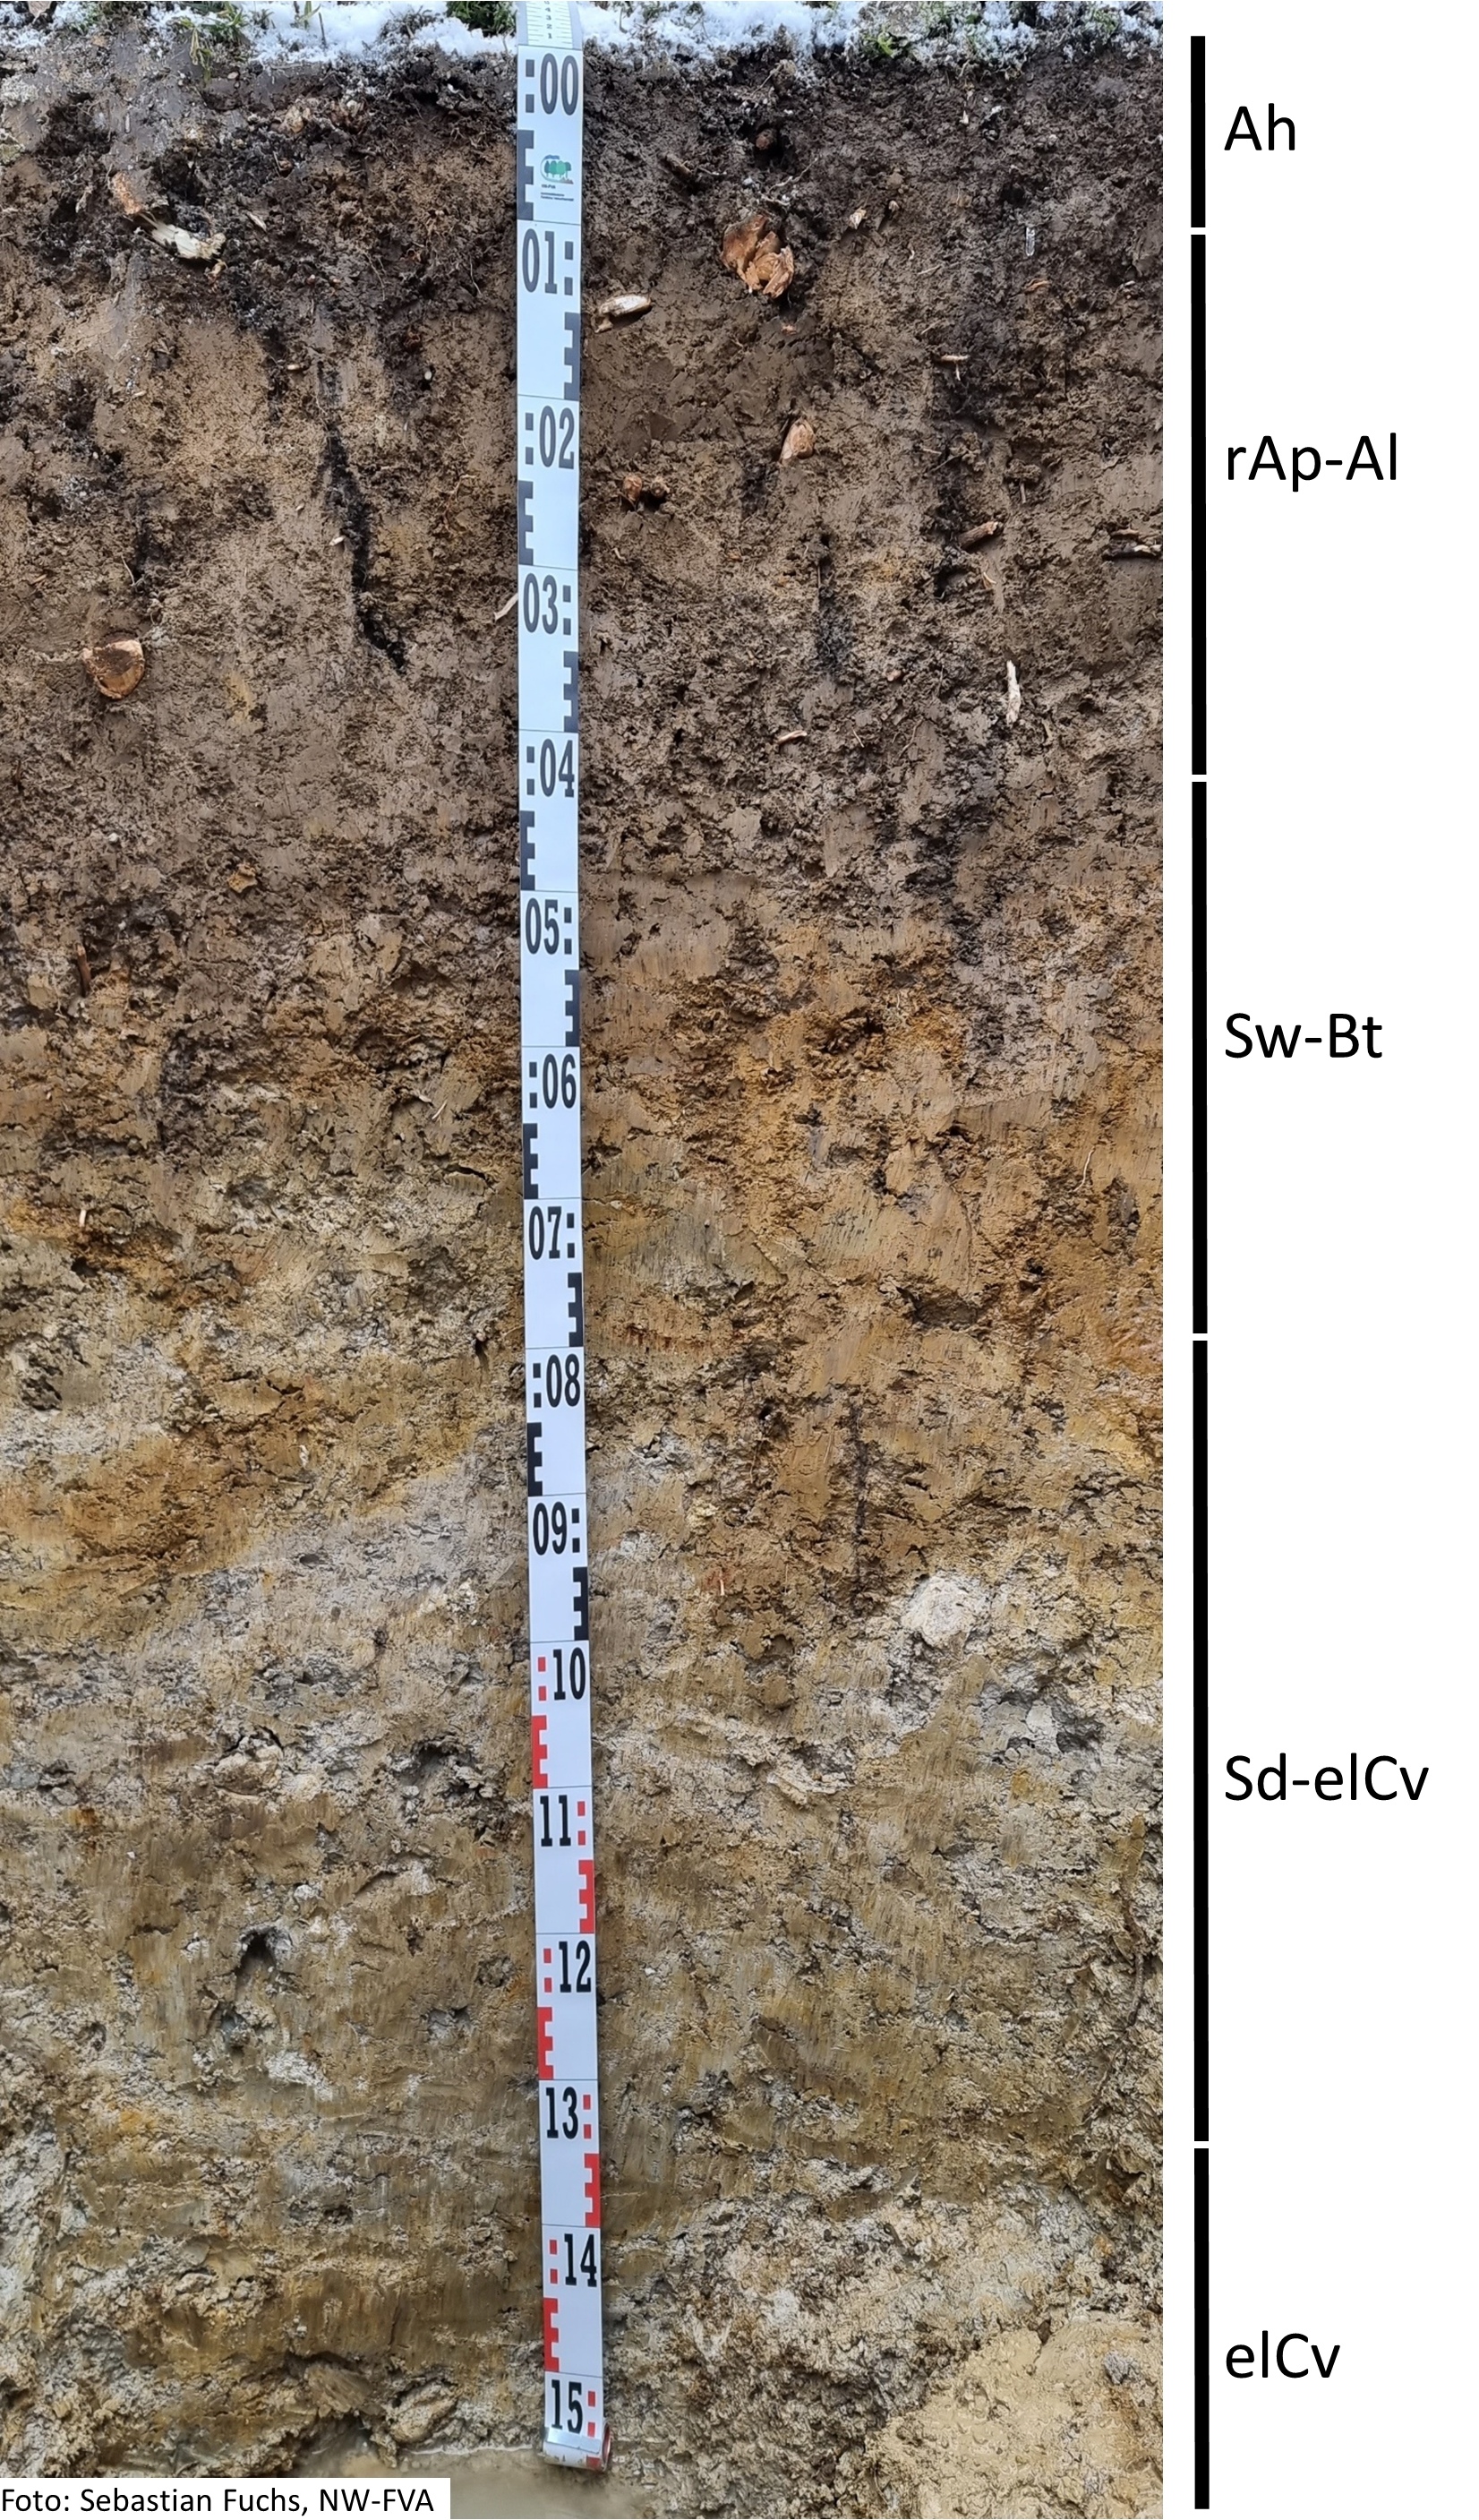 Das Foto zeigt einen senkrechten Schnitt durch den Boden der Untersuchungsfläche. Das Bodenprofil enthält folgende Bodenhorizonte: Ah, M-Al, Sw-Bt, Sd-elCv, elCv